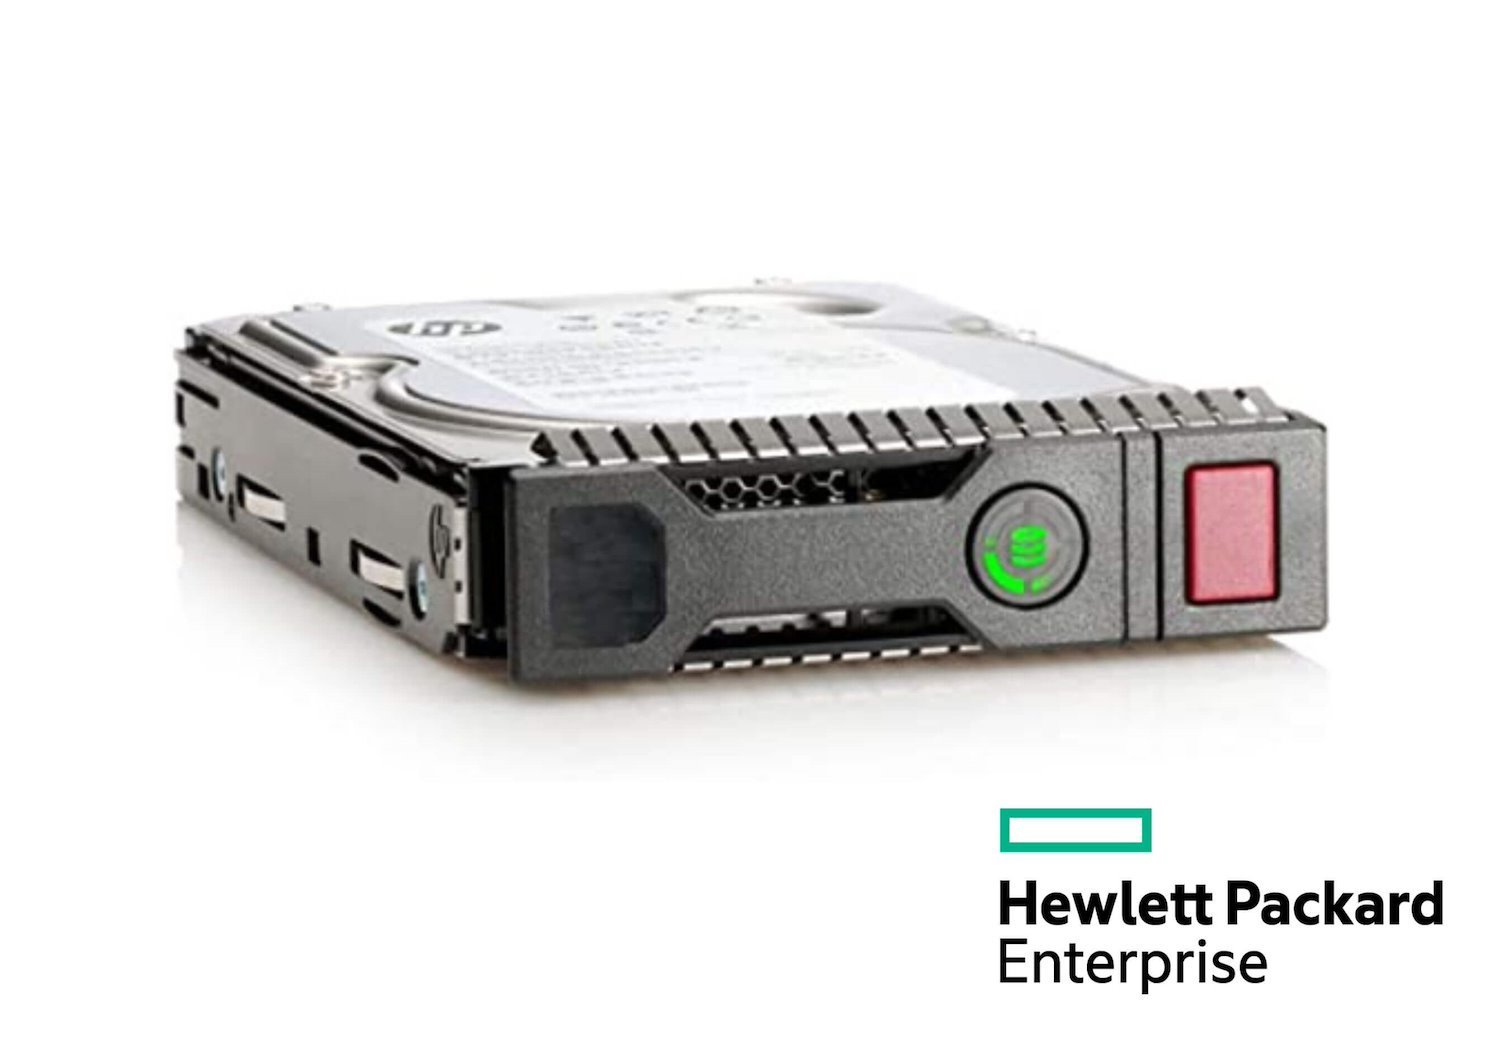 HPE 10 TB Hard Drive - 3.5" Internal - SATA (SATA/600)